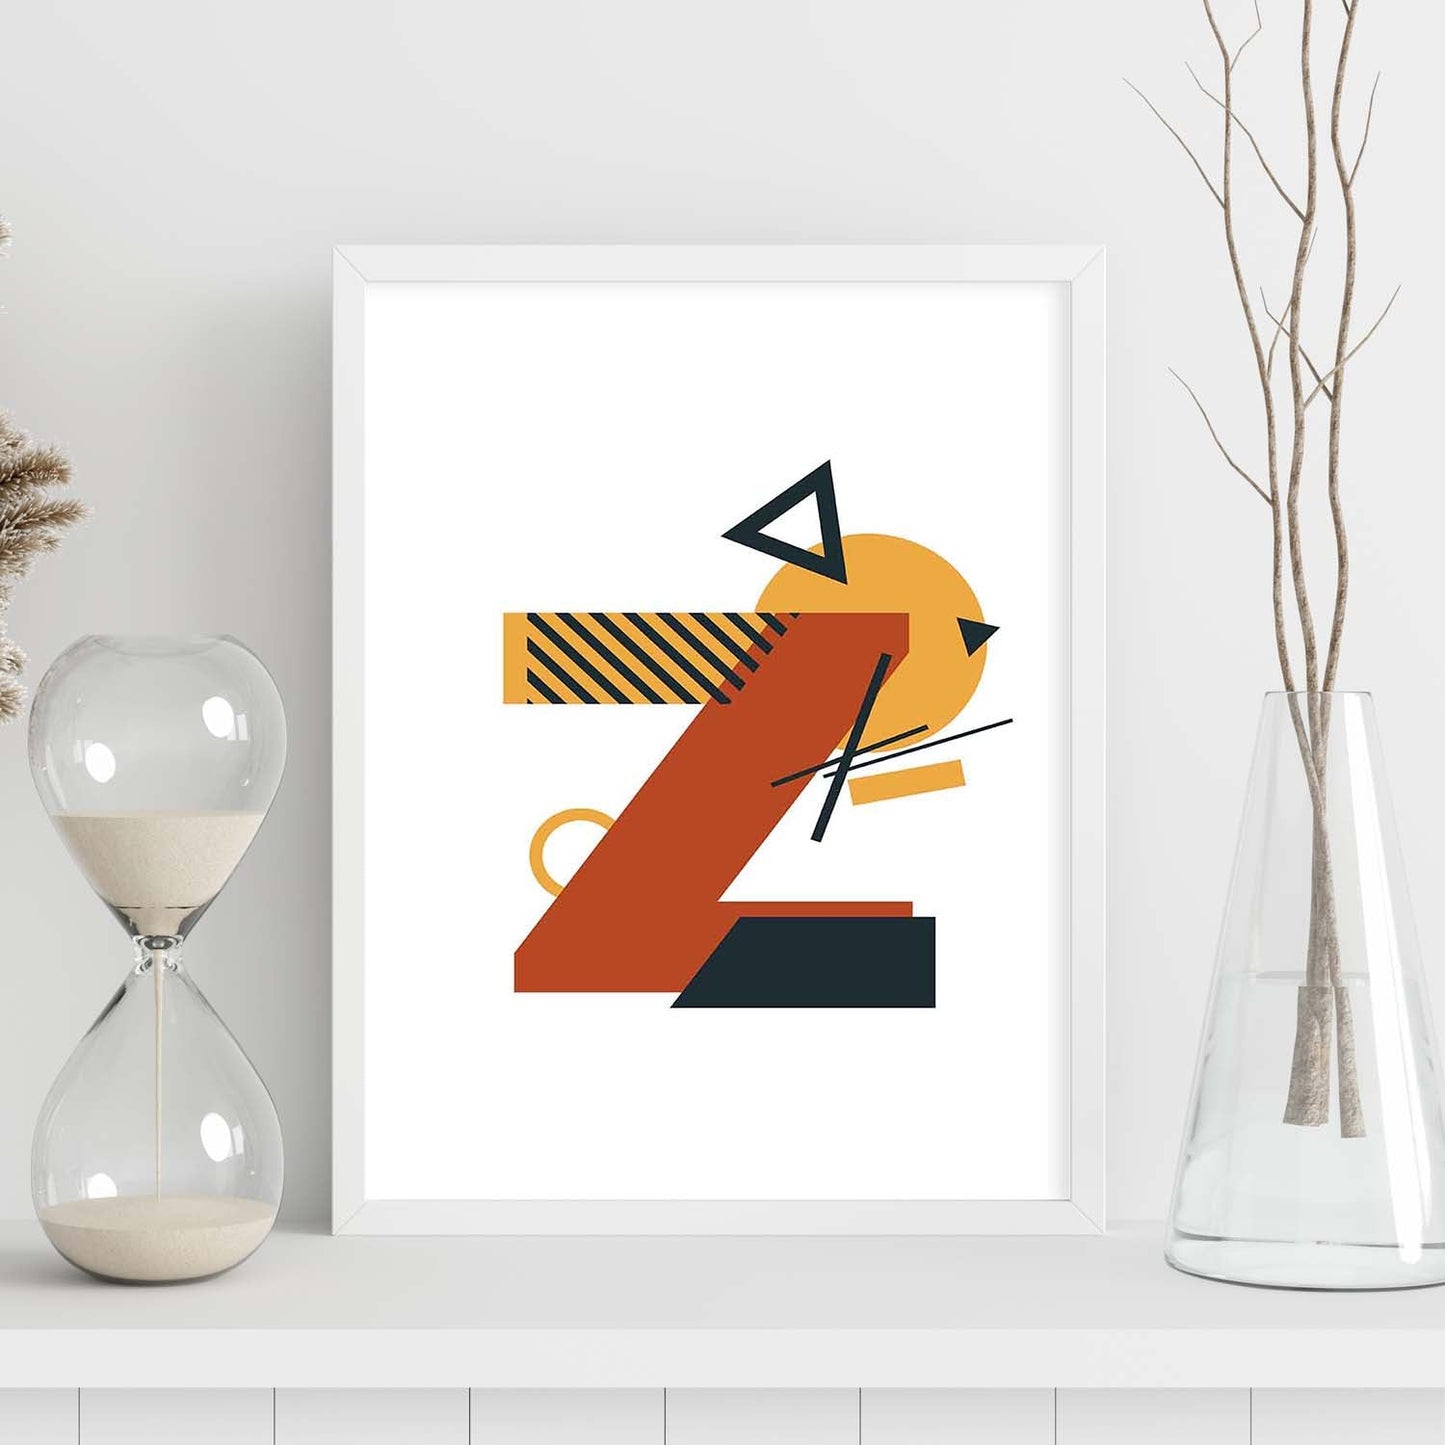 Poster de letra Z. Lámina estilo Geometria con formas con imágenes del alfabeto.-Artwork-Nacnic-Nacnic Estudio SL